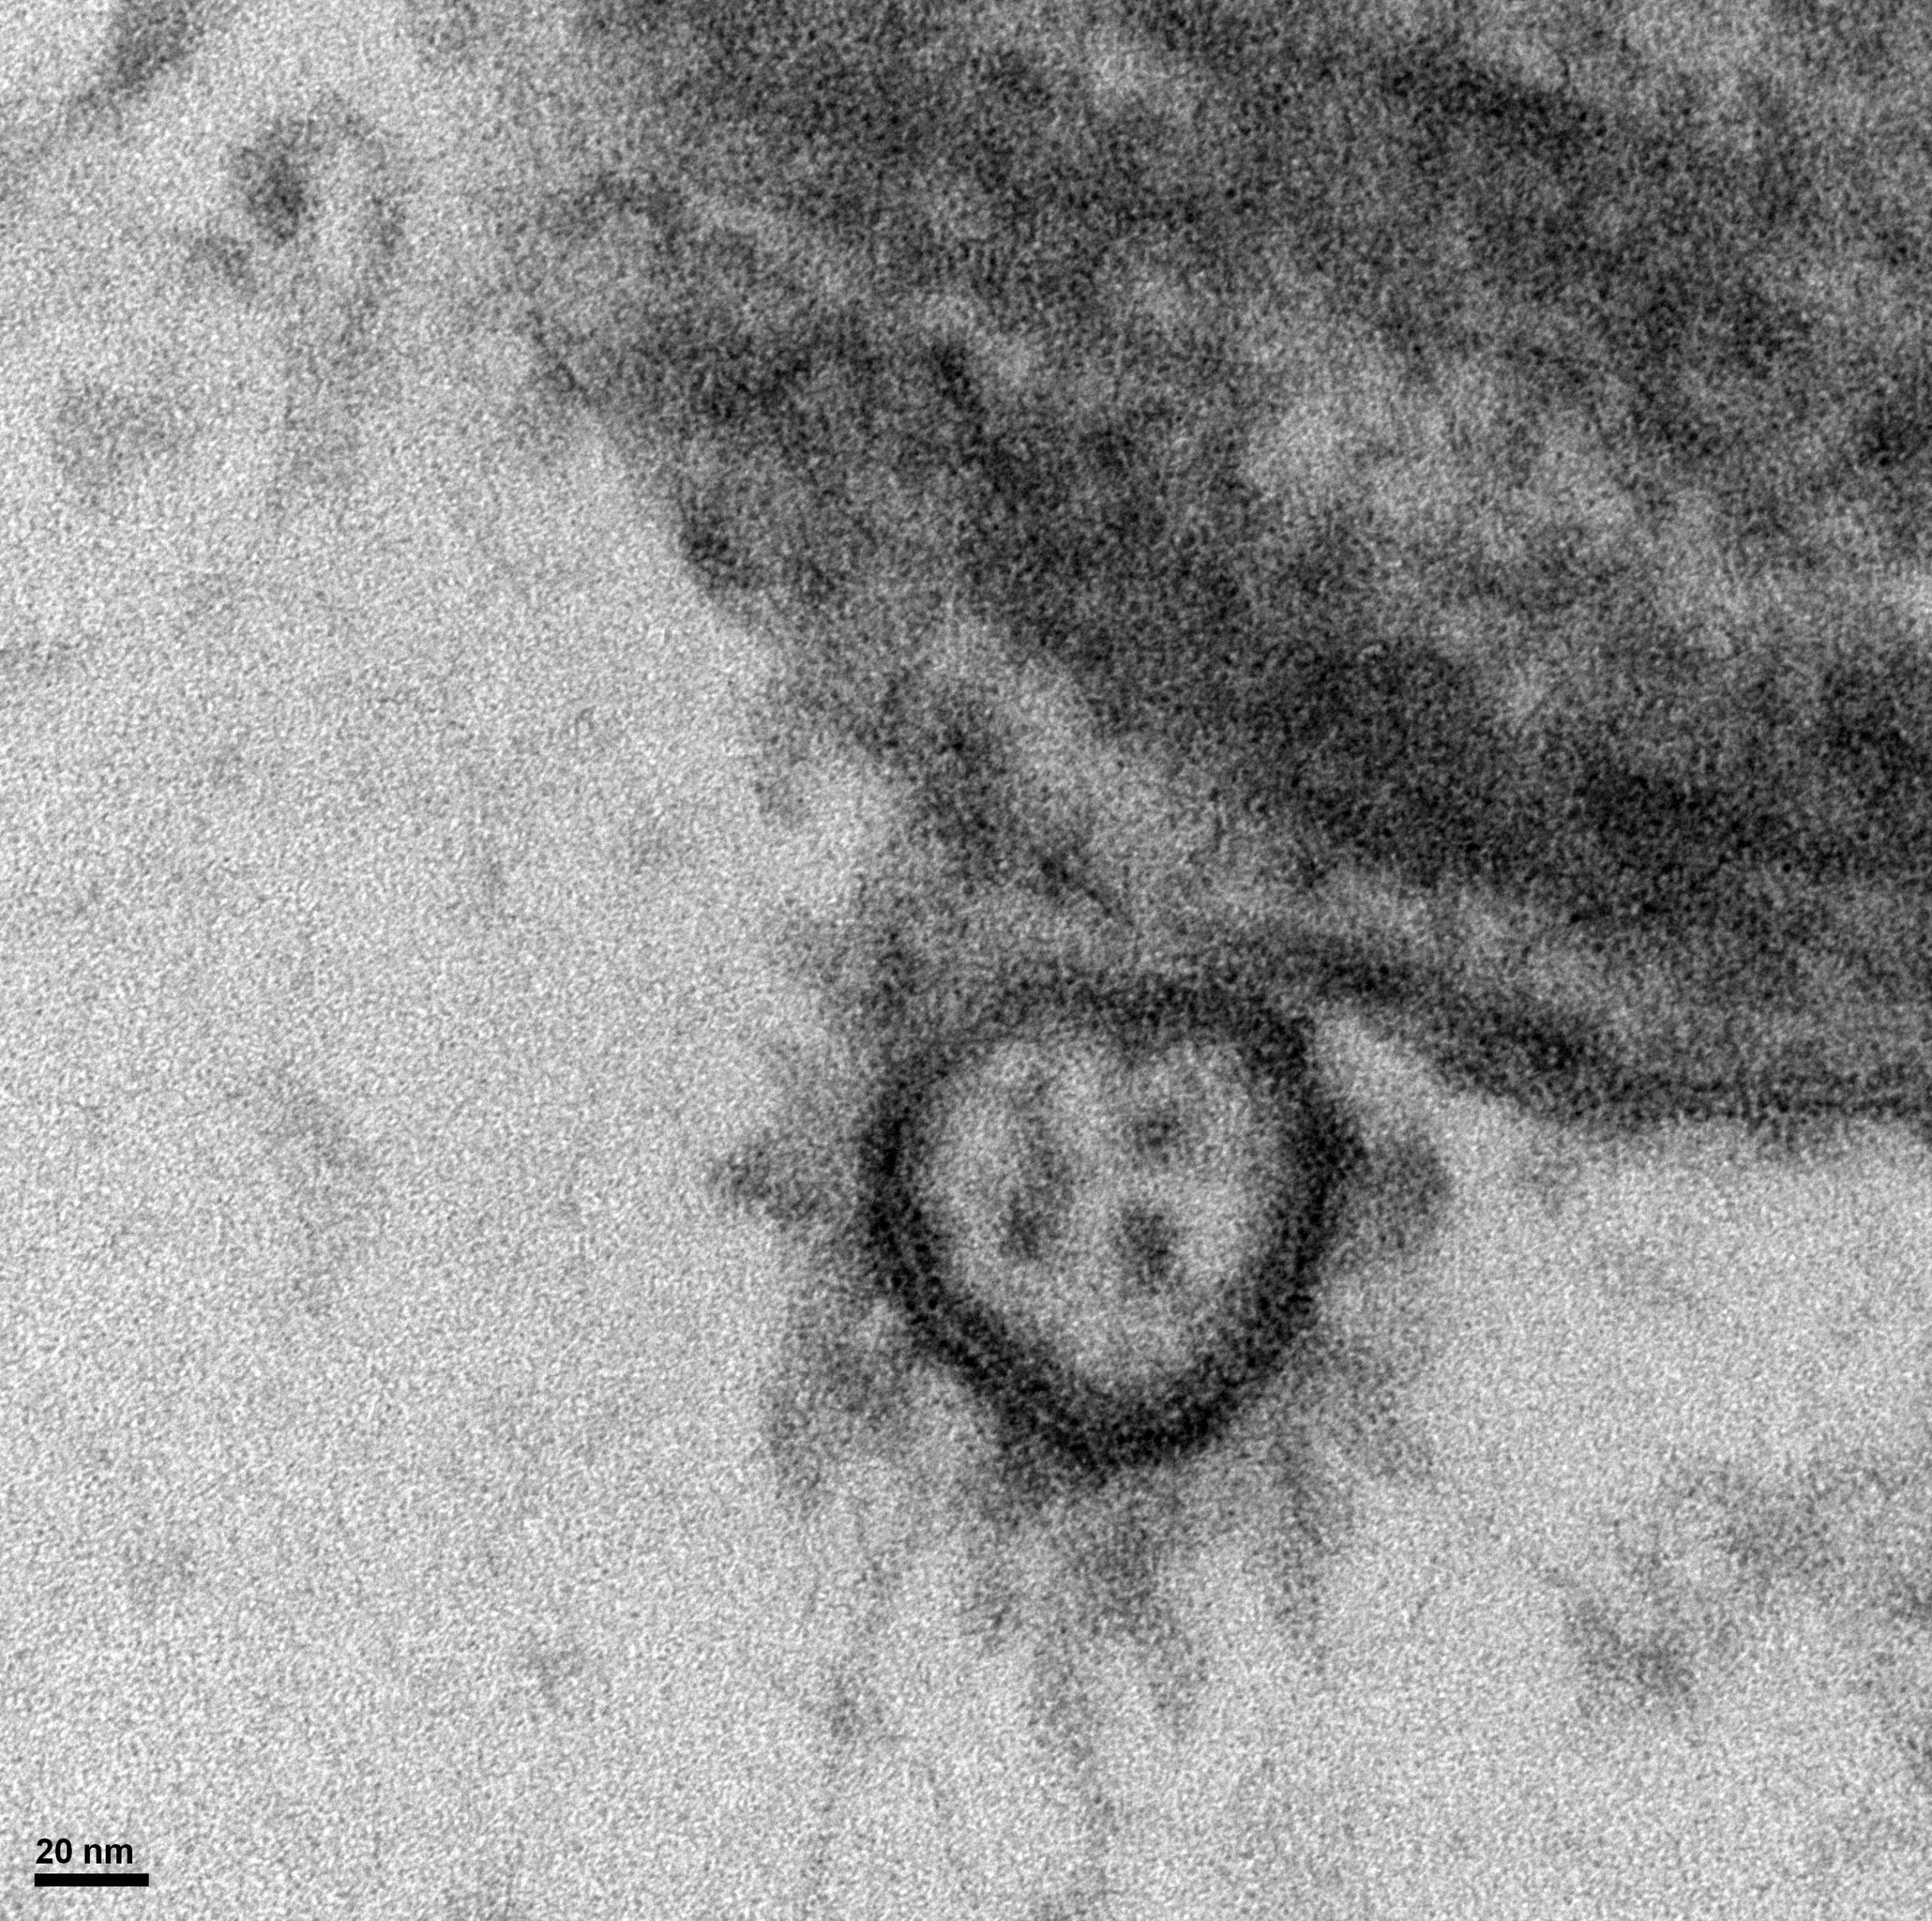 Un virus créé en laboratoire, vraiment ?